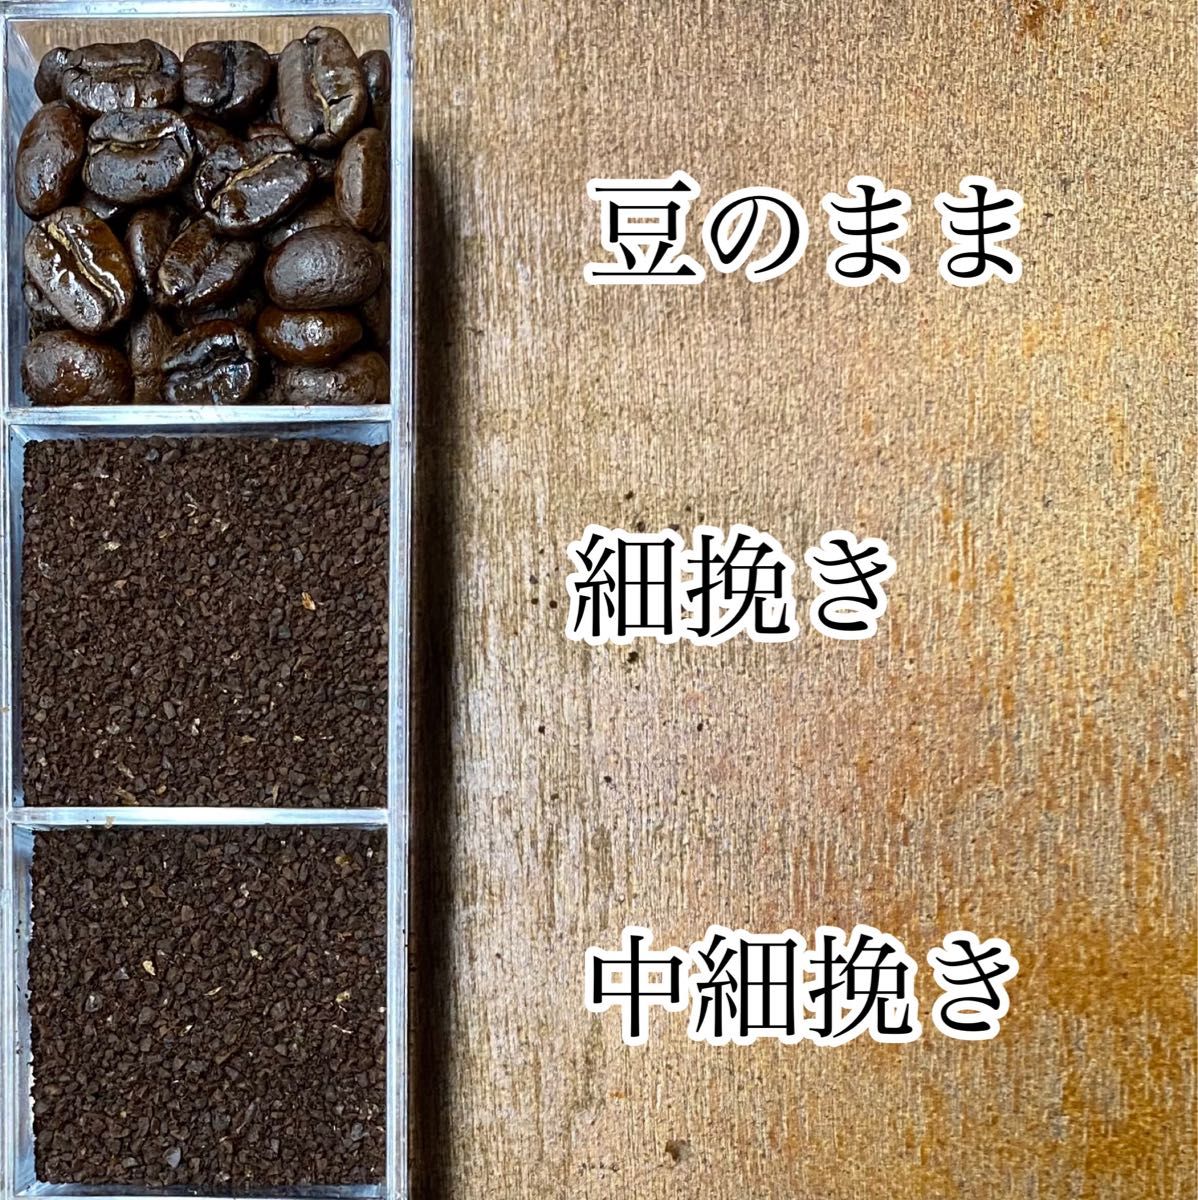 春限定ブレンドセットB 自家焙煎コーヒー豆3種(100g×3個)